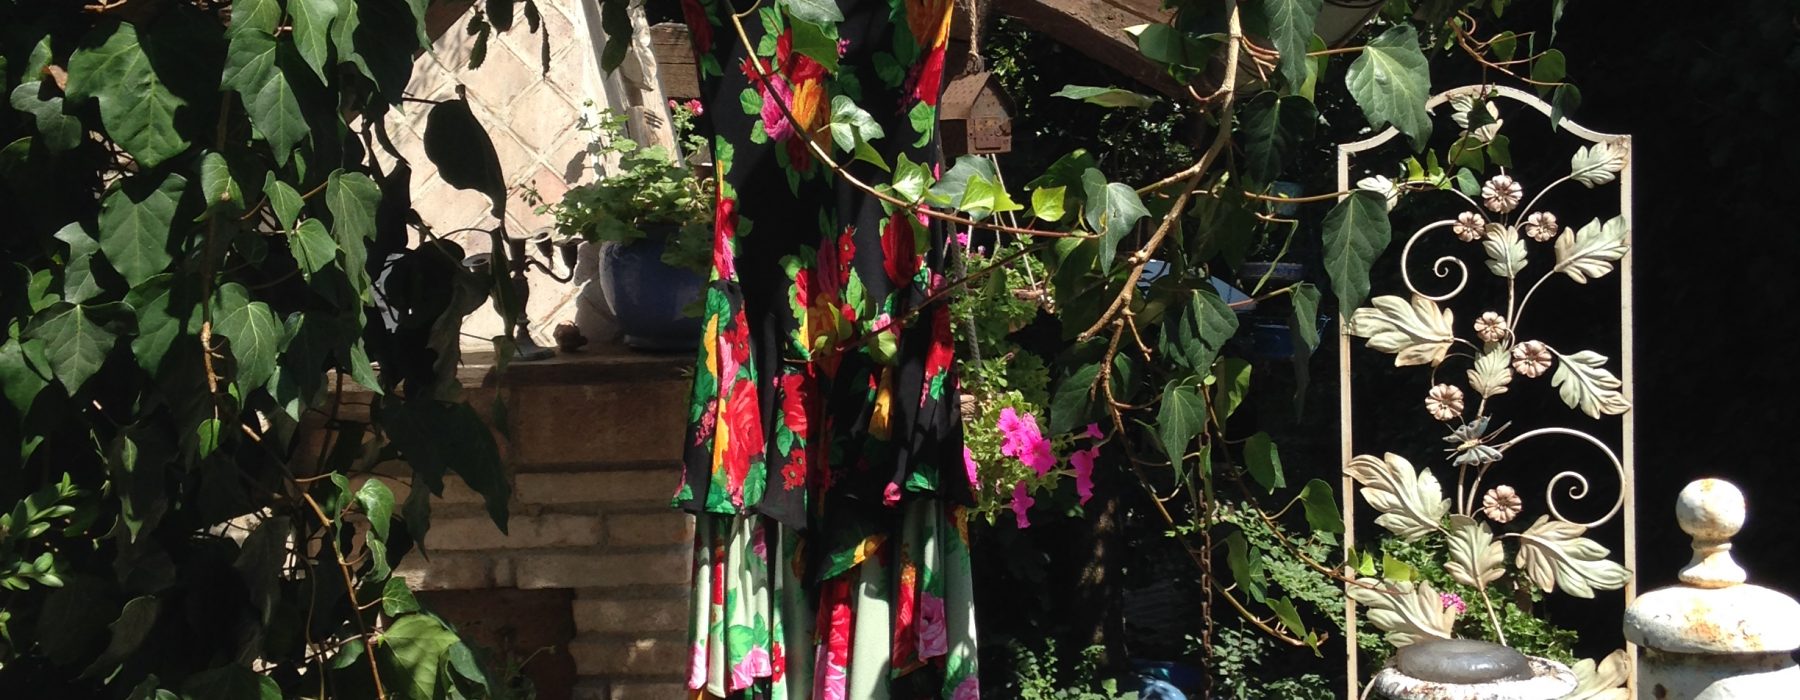 La Bellasignora apre il suo armadio: l’estate fiorita di Franco Moschino